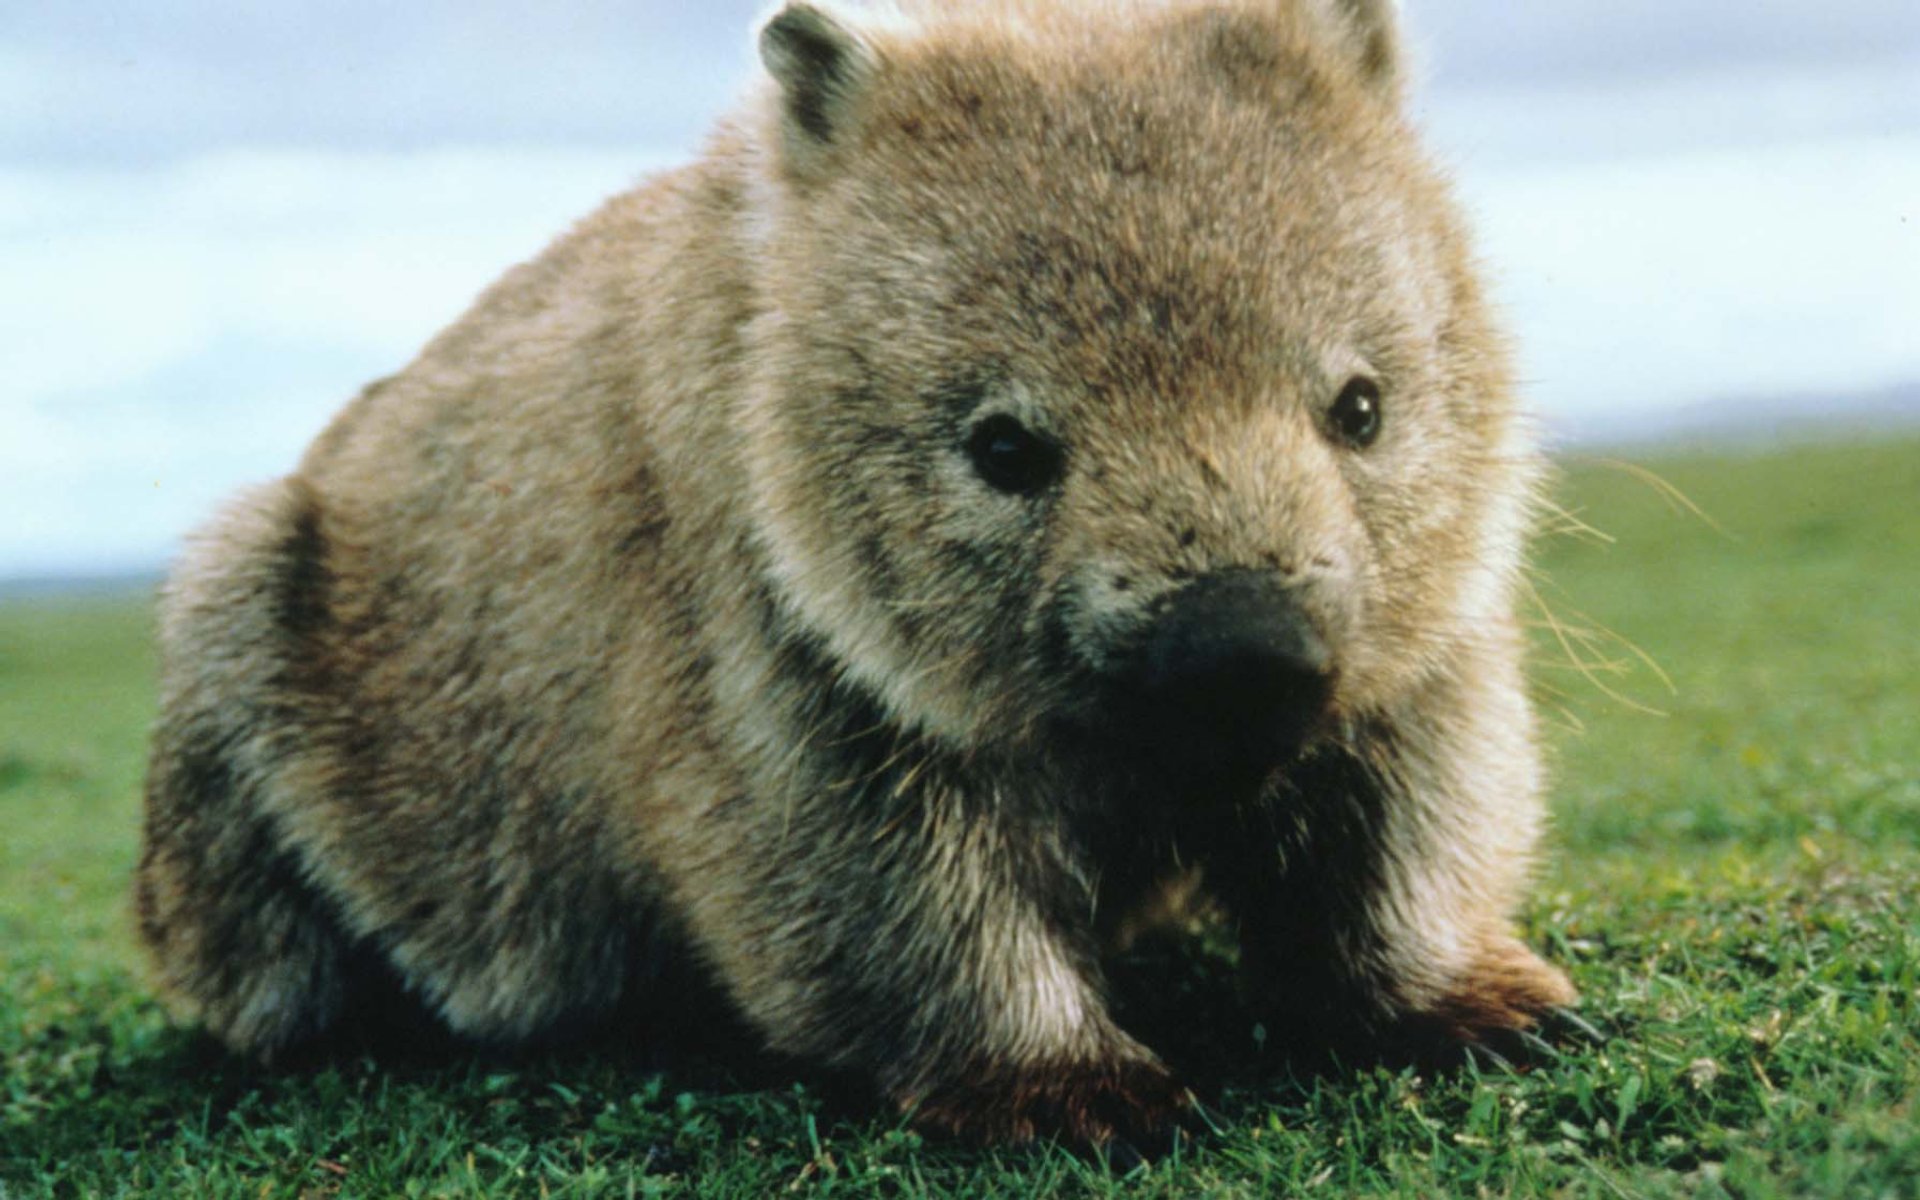 animals, wombat - desktop wallpaper